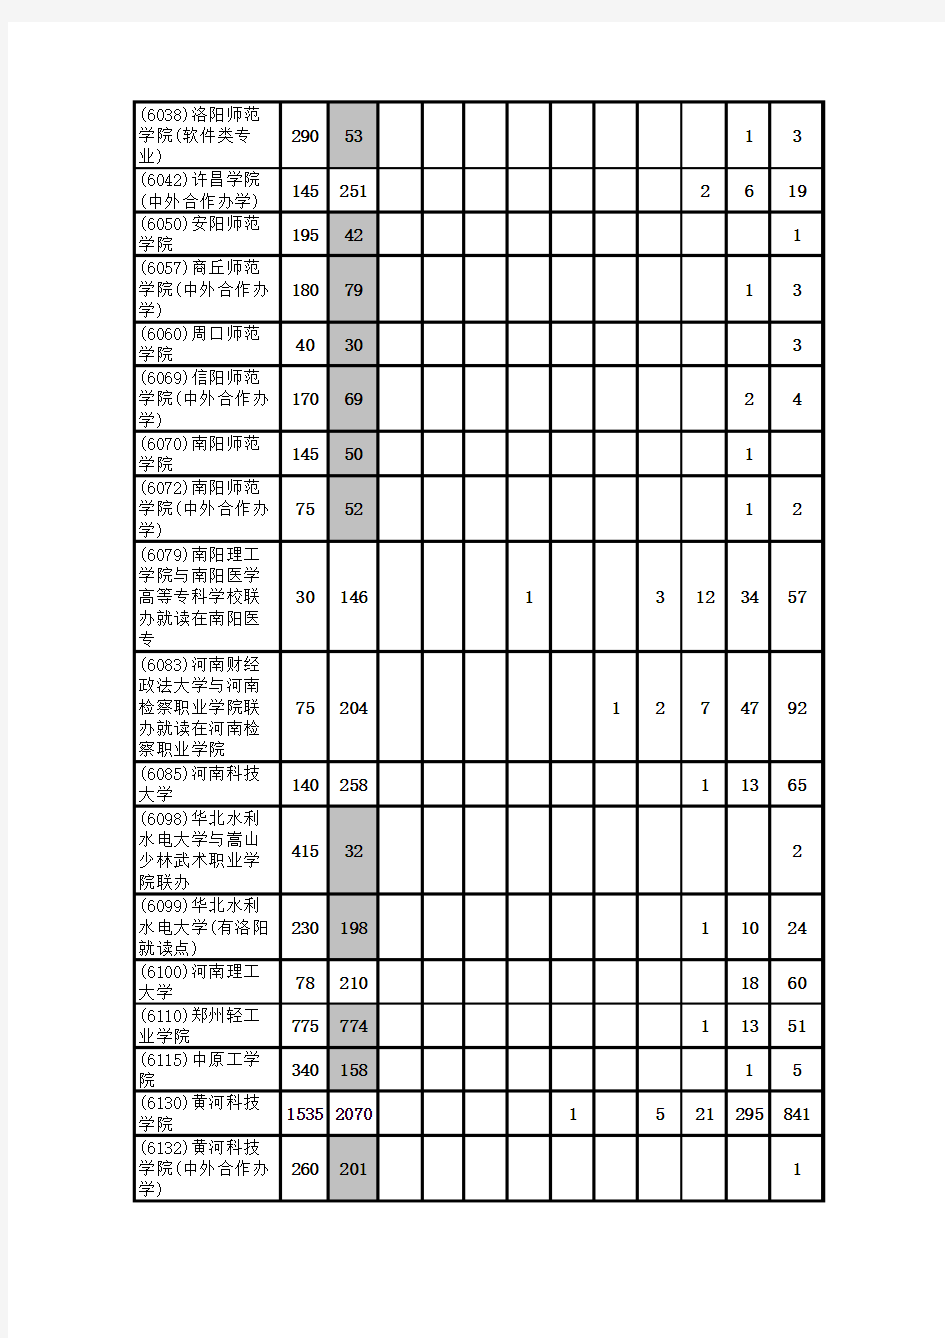 2014年河南省普通高等学校招生录取本科三批第一志愿分数段统计(理科)